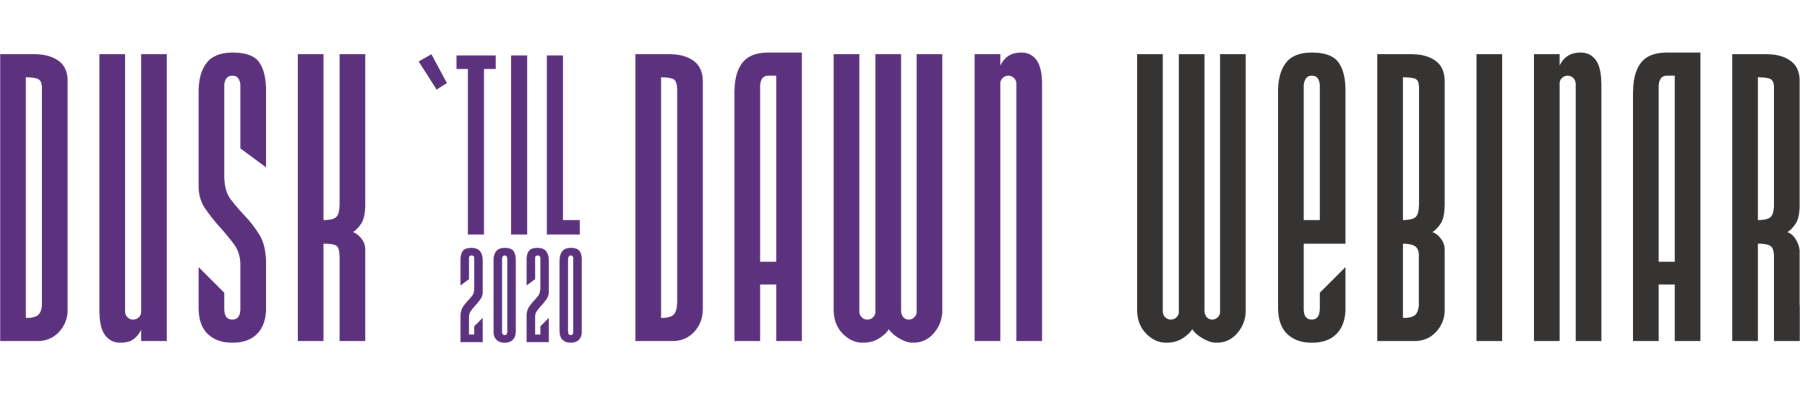 Dusk 'til Dawn 2020 Webinar